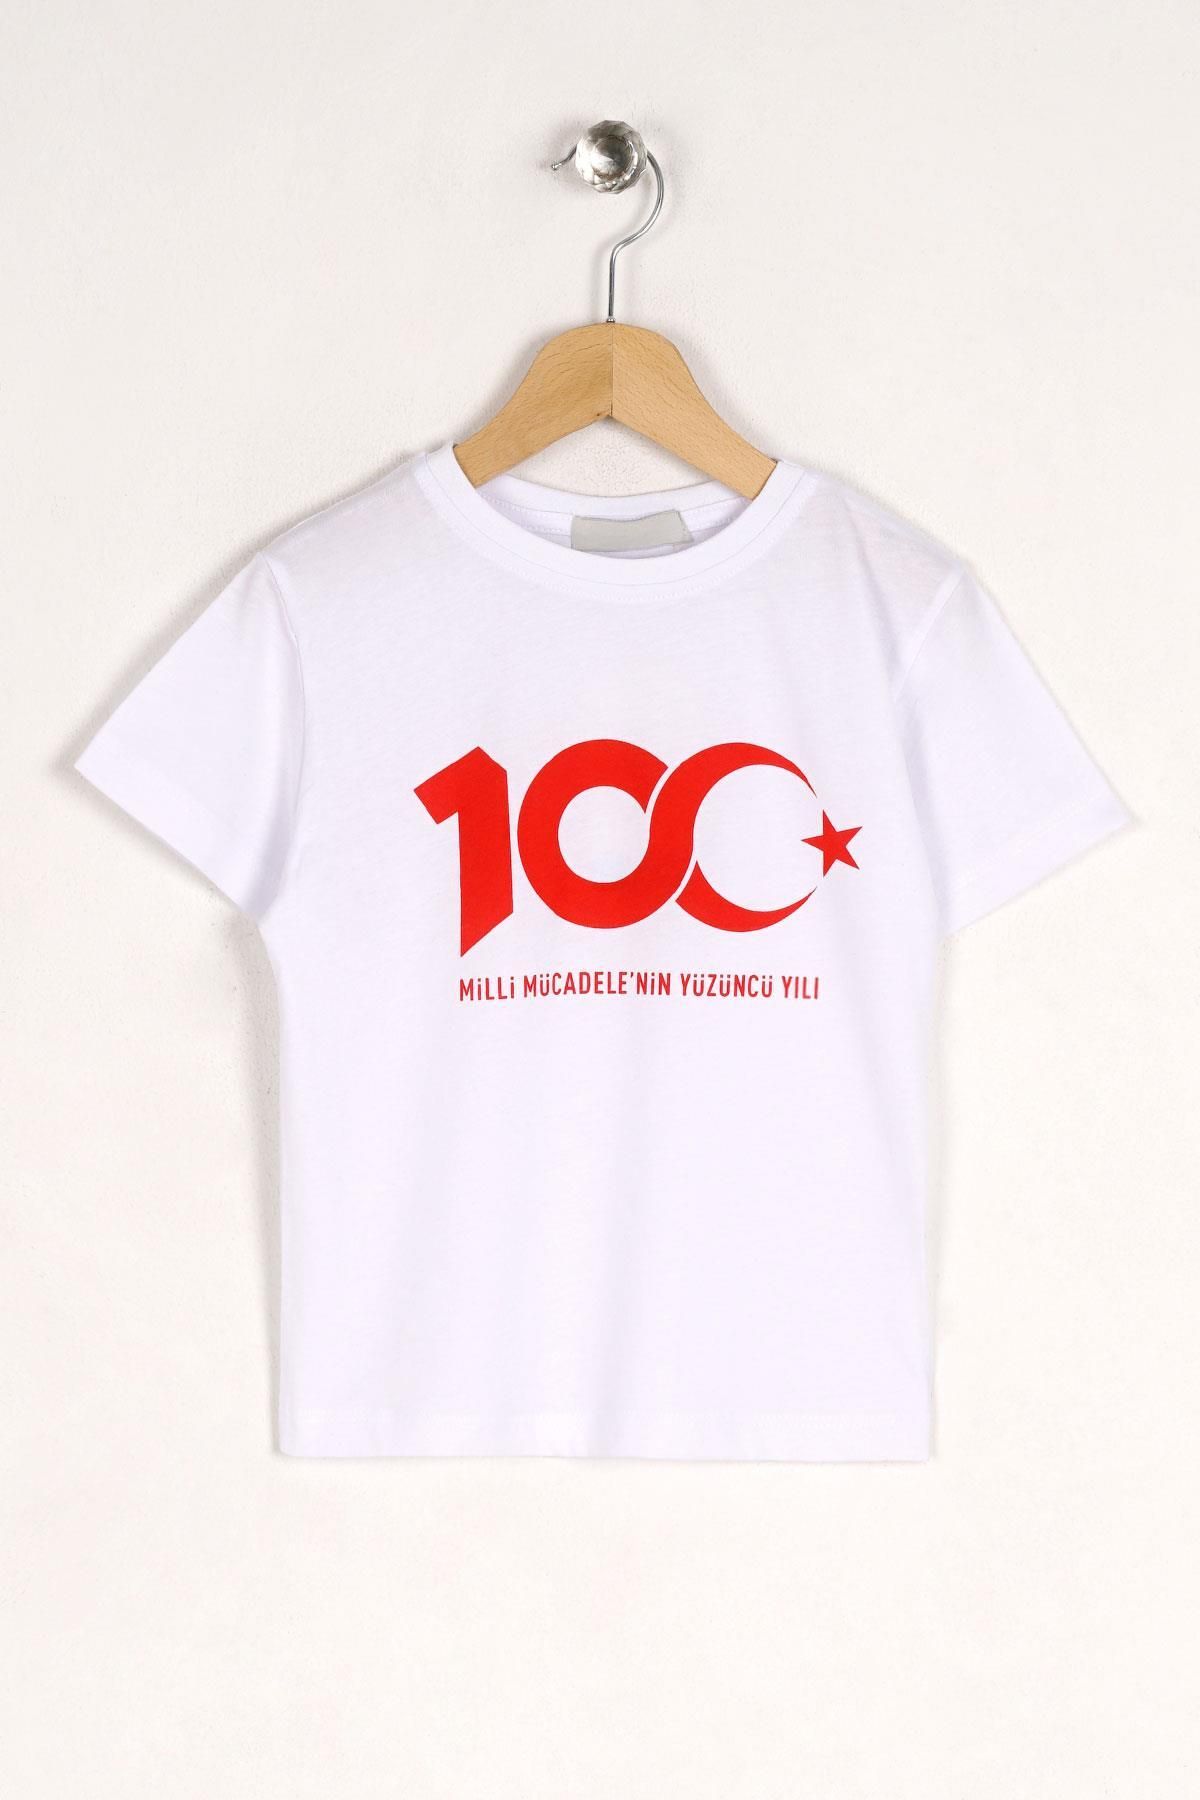 zepkids Bisiklet Yaka Kısa Kol Mıllı Mucadelenın 100 Uncu Yılı Baskılı Beyaz Renk Tshirt